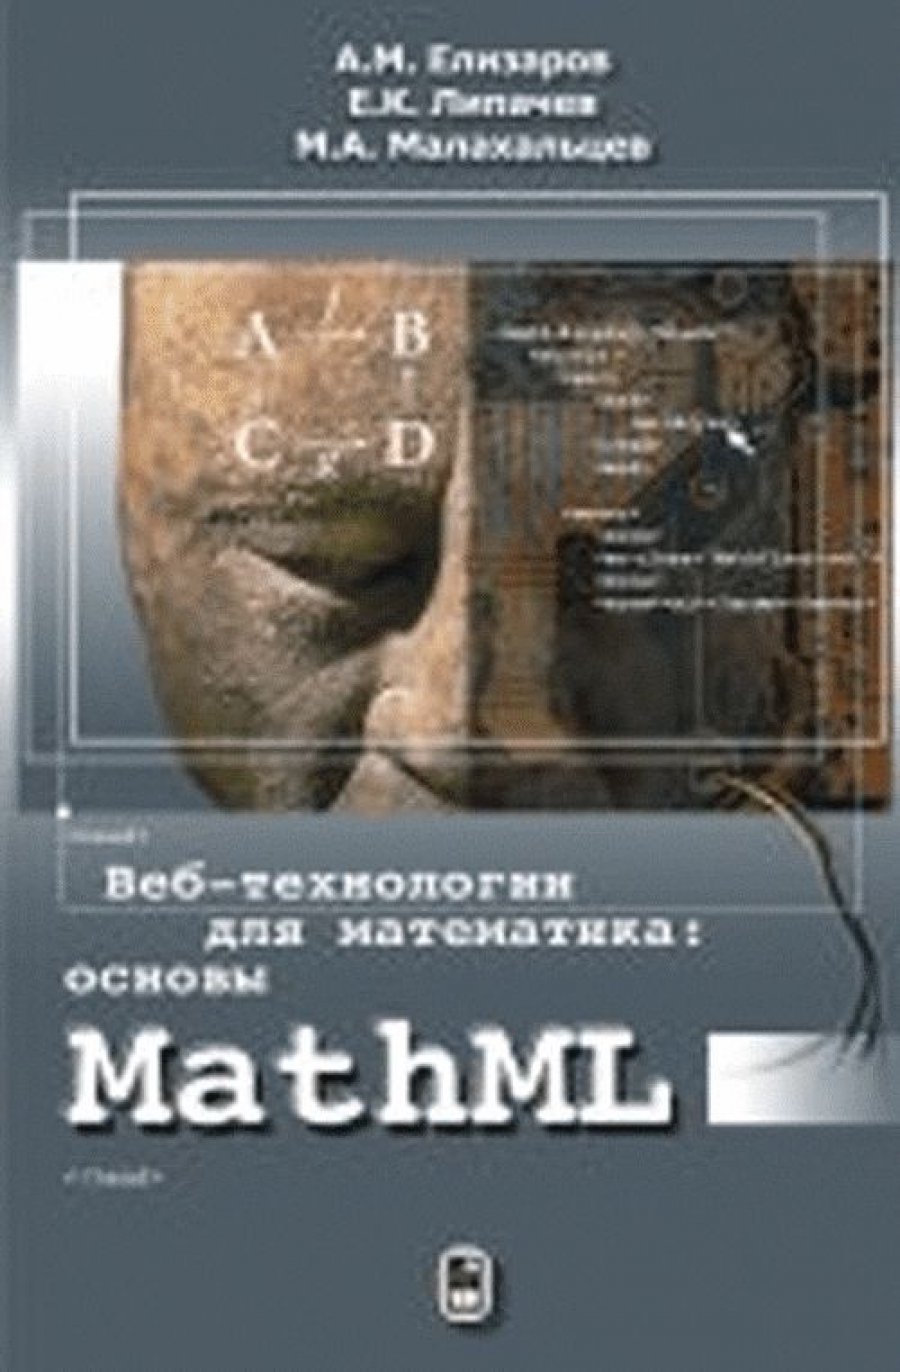 Елизаров А.М., Липачев Е.К., Малахальцев М.А. Веб-технологии для математика: основы MathML 